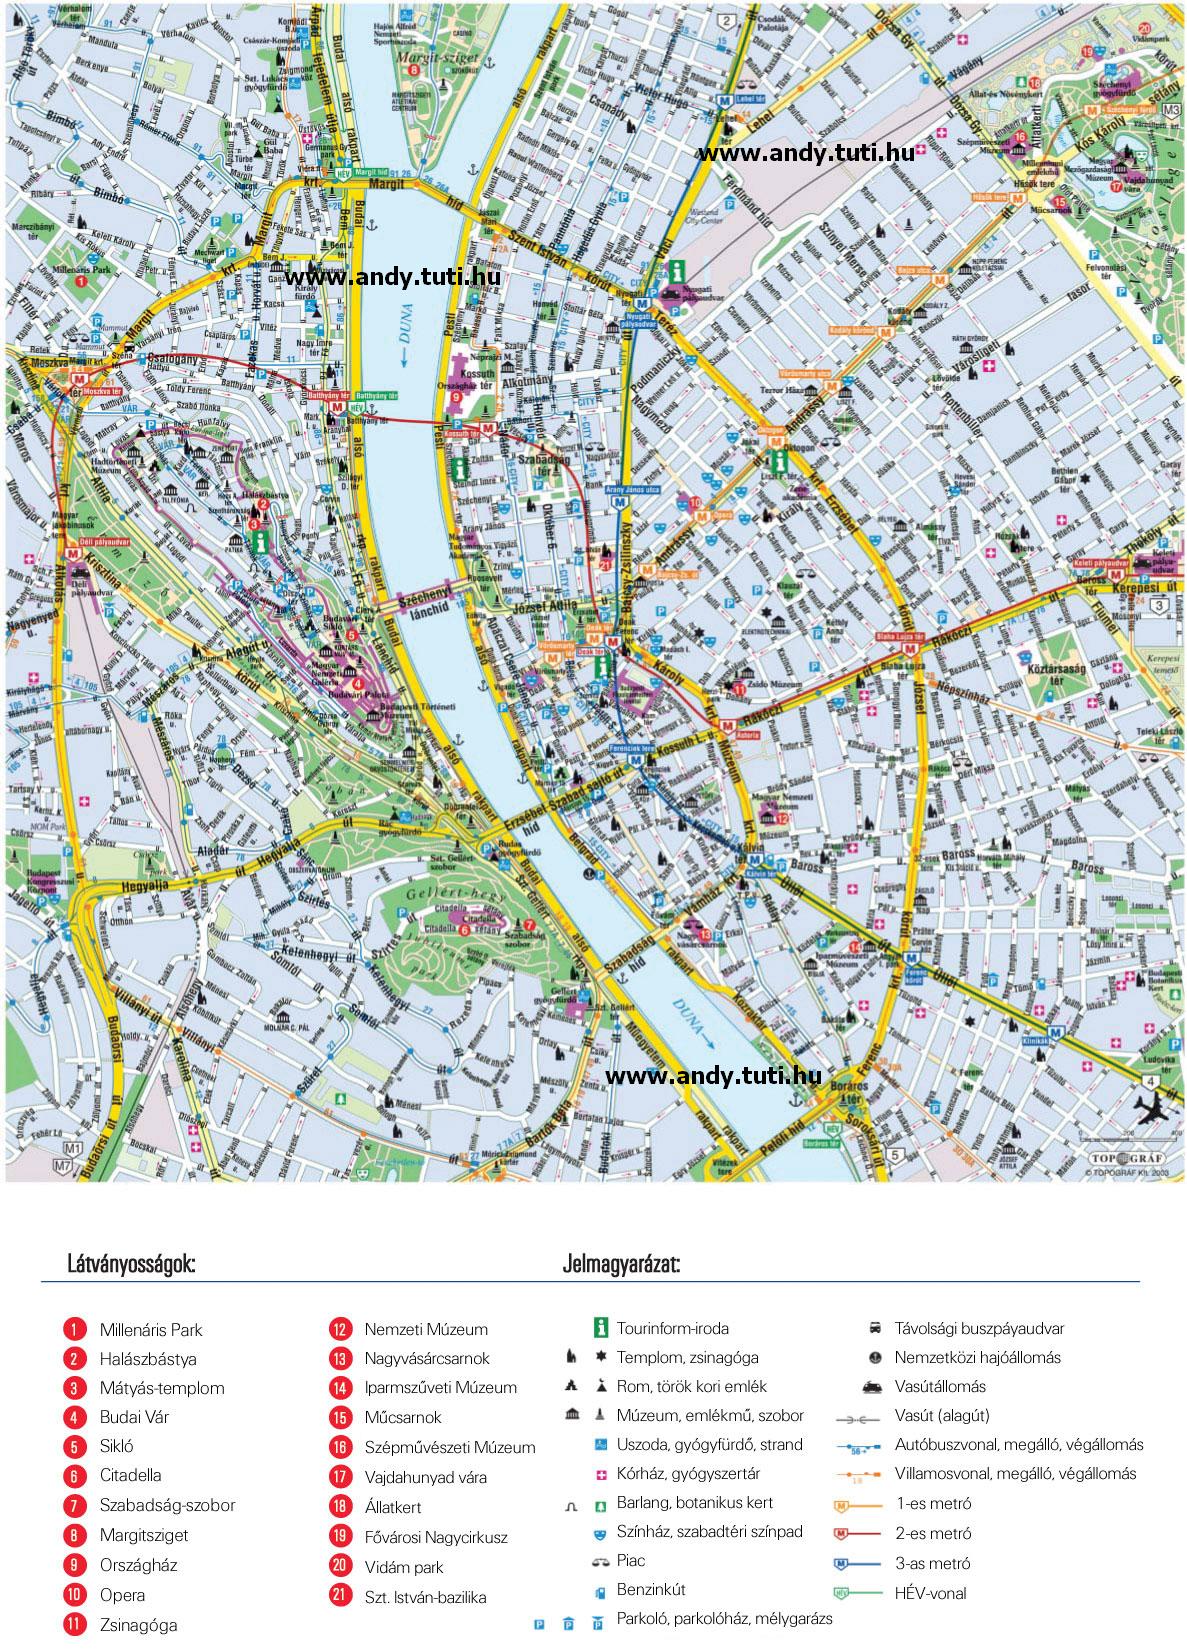 nyomtatható térkép budapest Letölthető térképek :::::: Powered by: .webtar.hu ::::::* nyomtatható térkép budapest